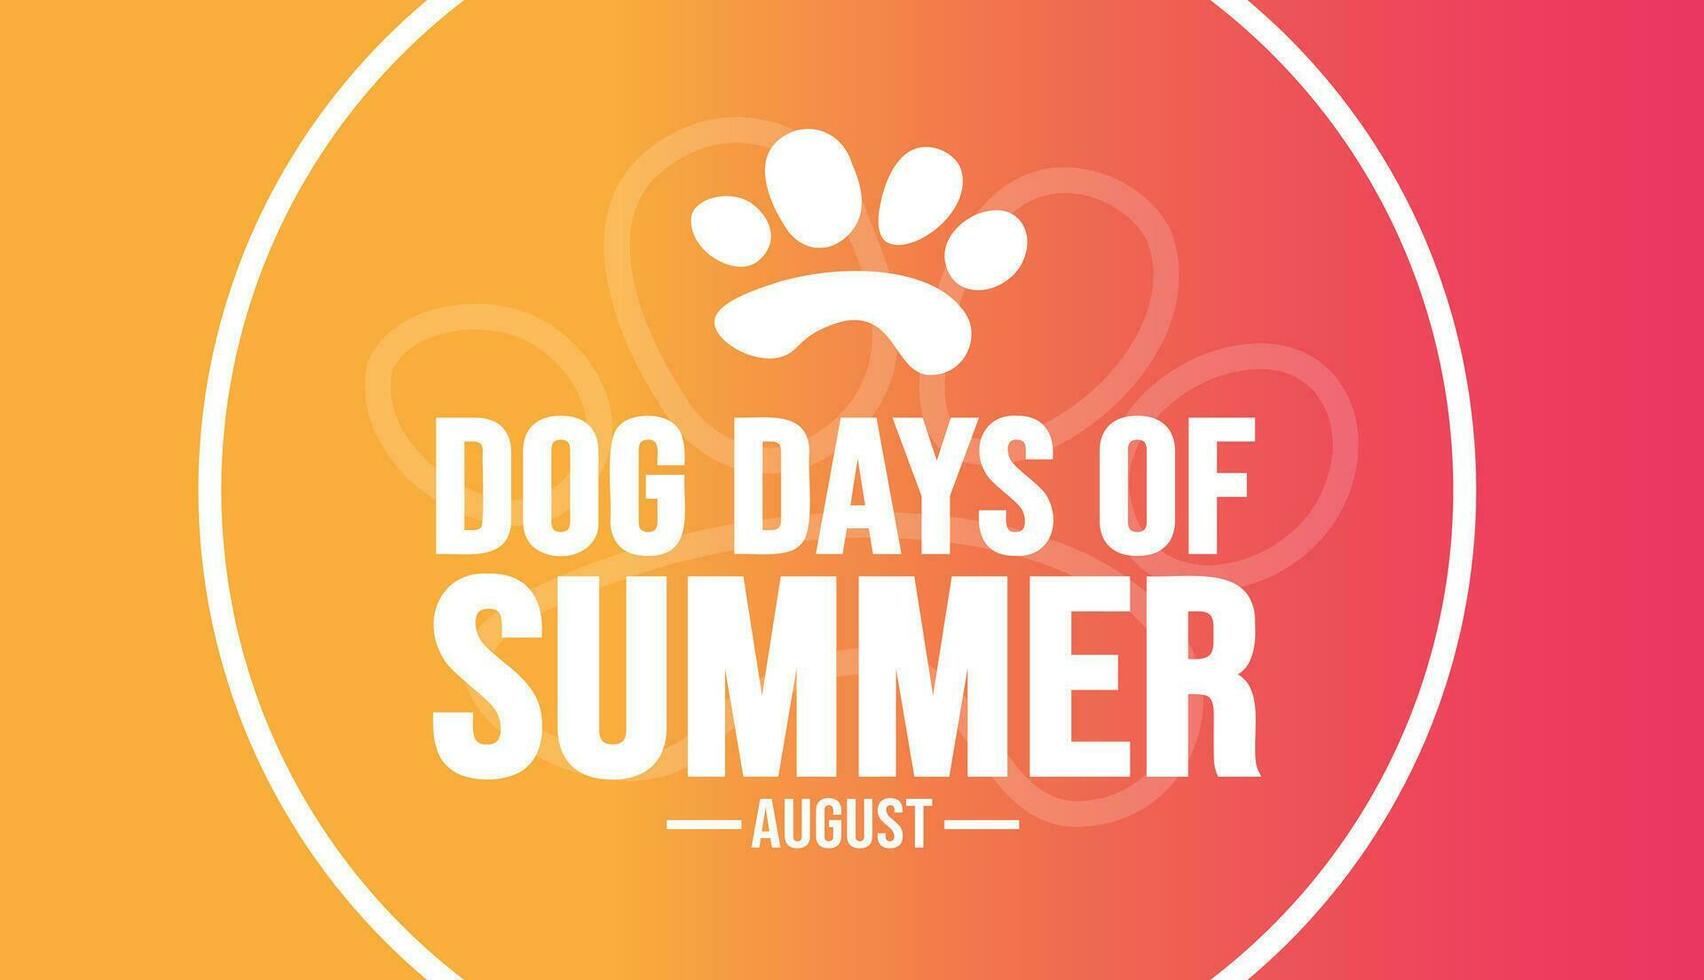 augusti är hund dagar av sommar bakgrund mall. Semester begrepp. bakgrund, baner, kort, och affisch design mall med text inskrift och standard Färg. vektor illustration.